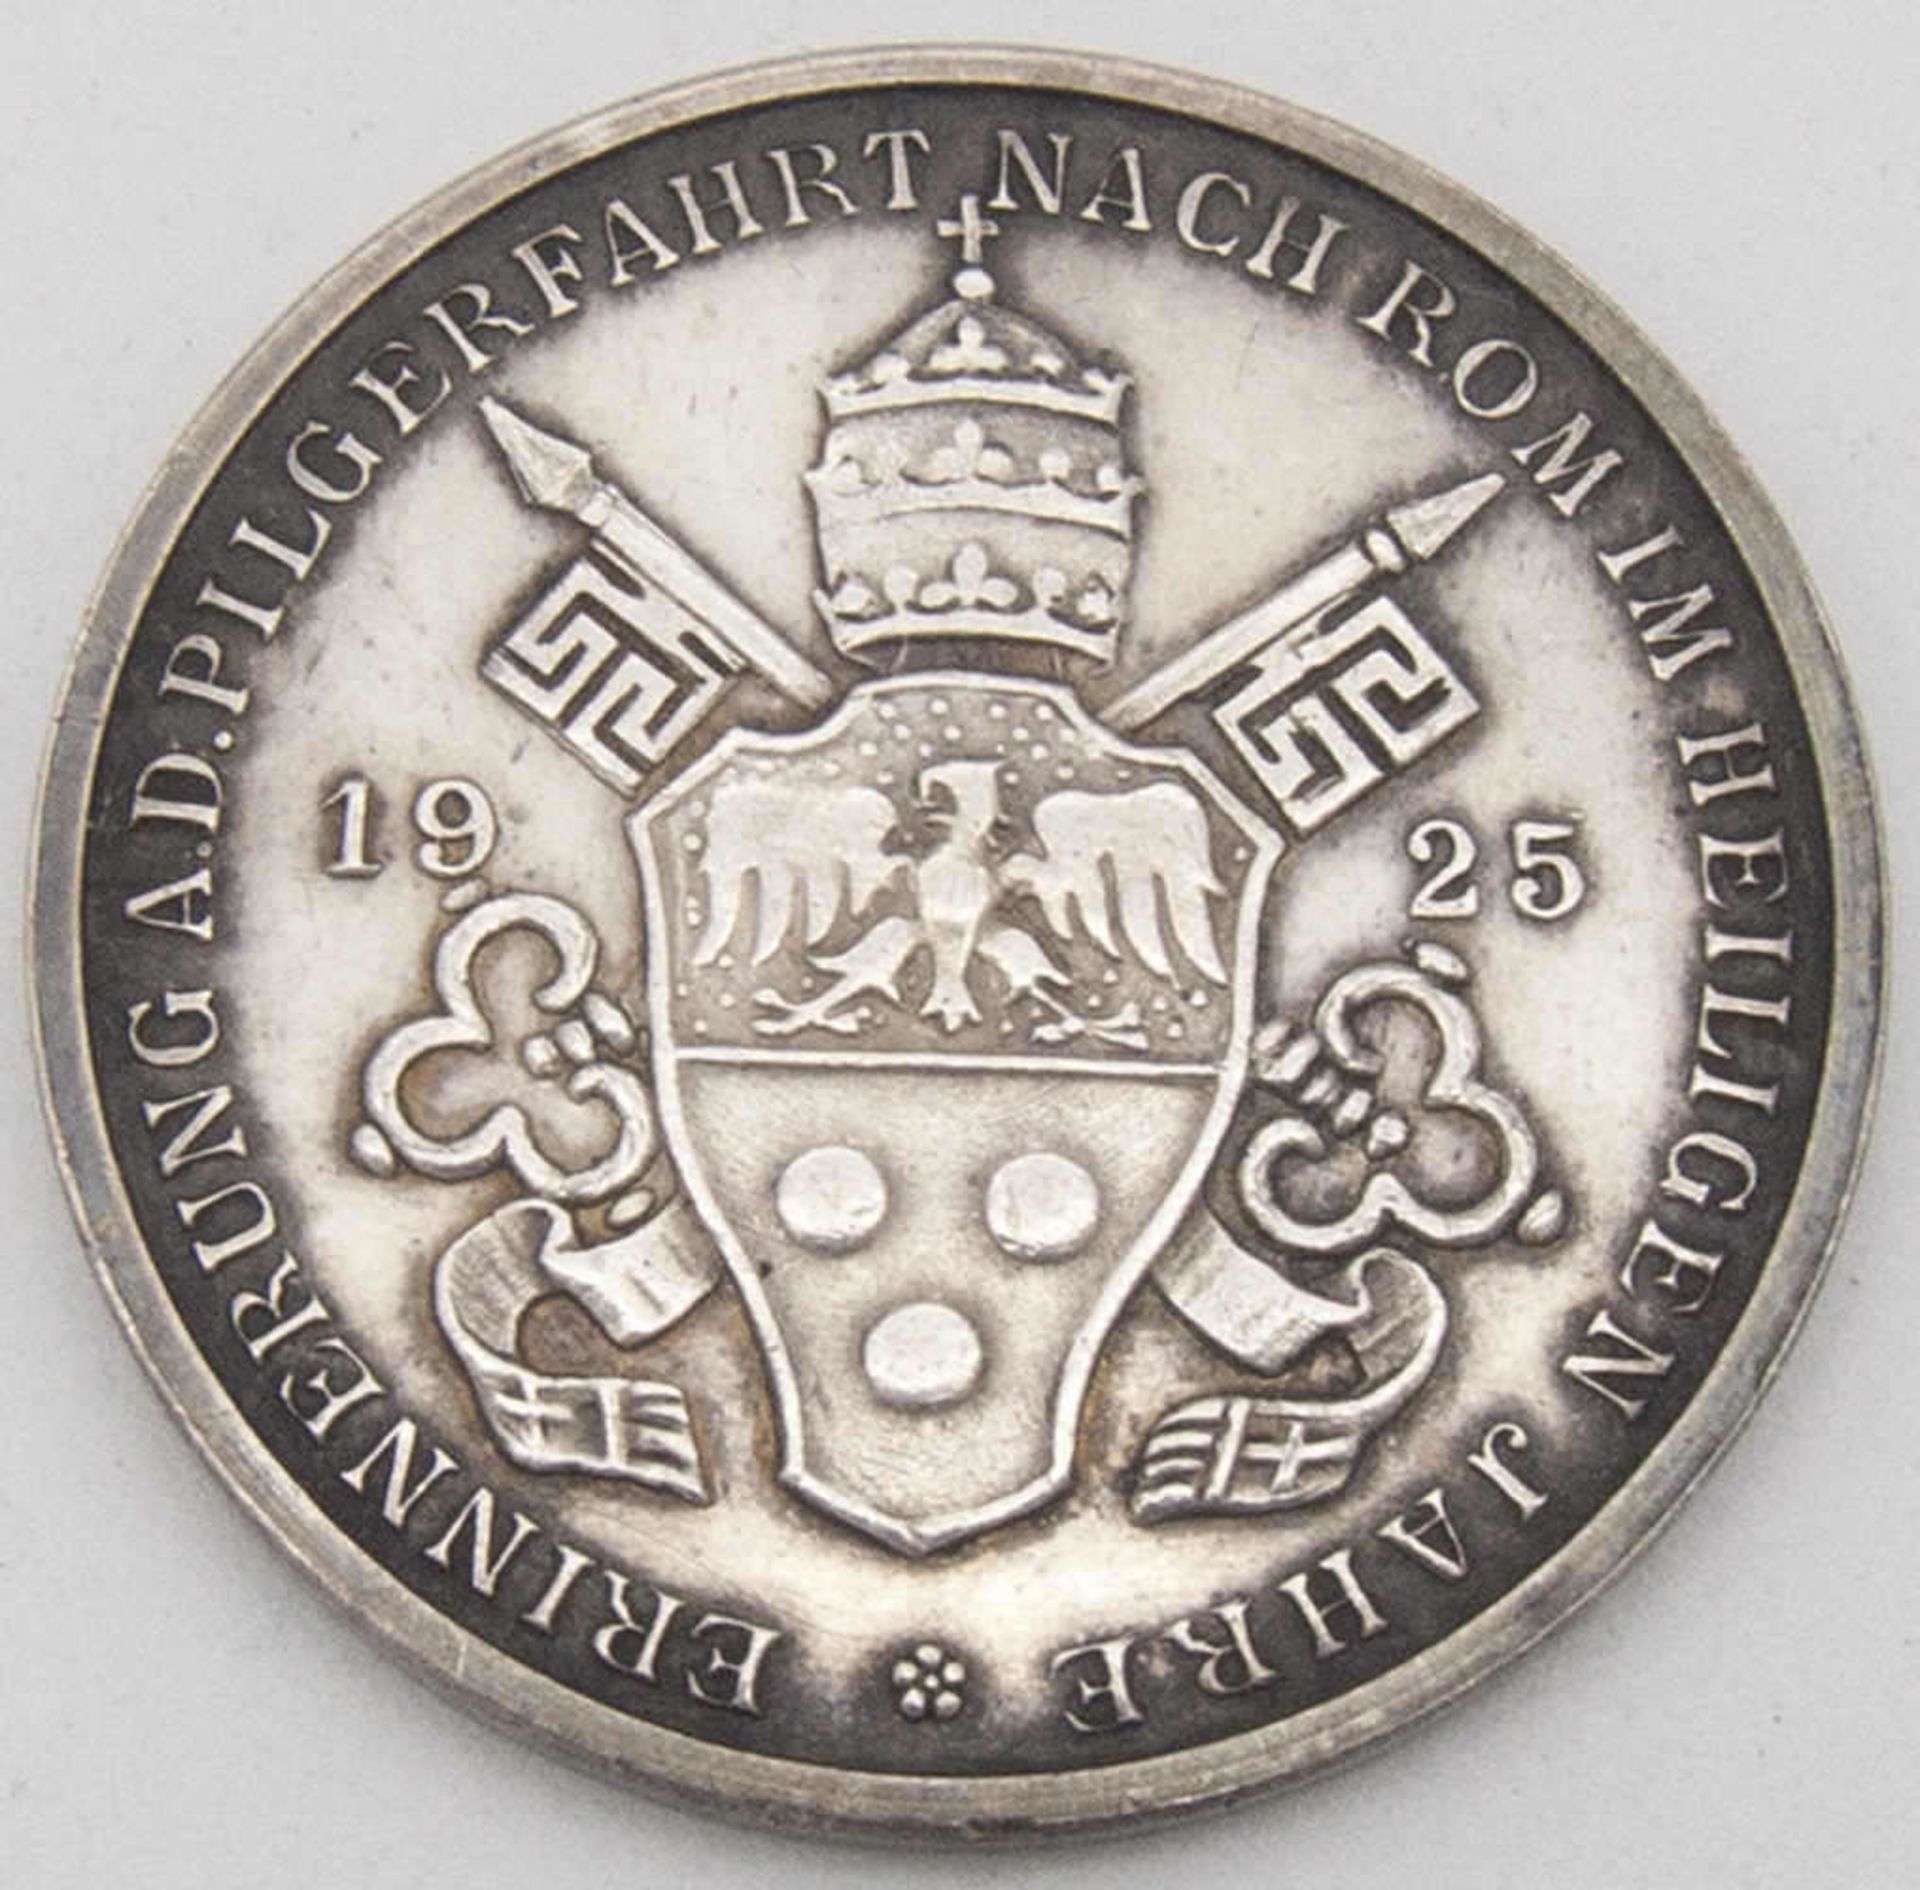 Erinnerungs - Medaille zur Pilgerfahrt nach Rom 1925. Silber 990. Papst Pius XI:. Durchmesser: ca. - Bild 2 aus 2